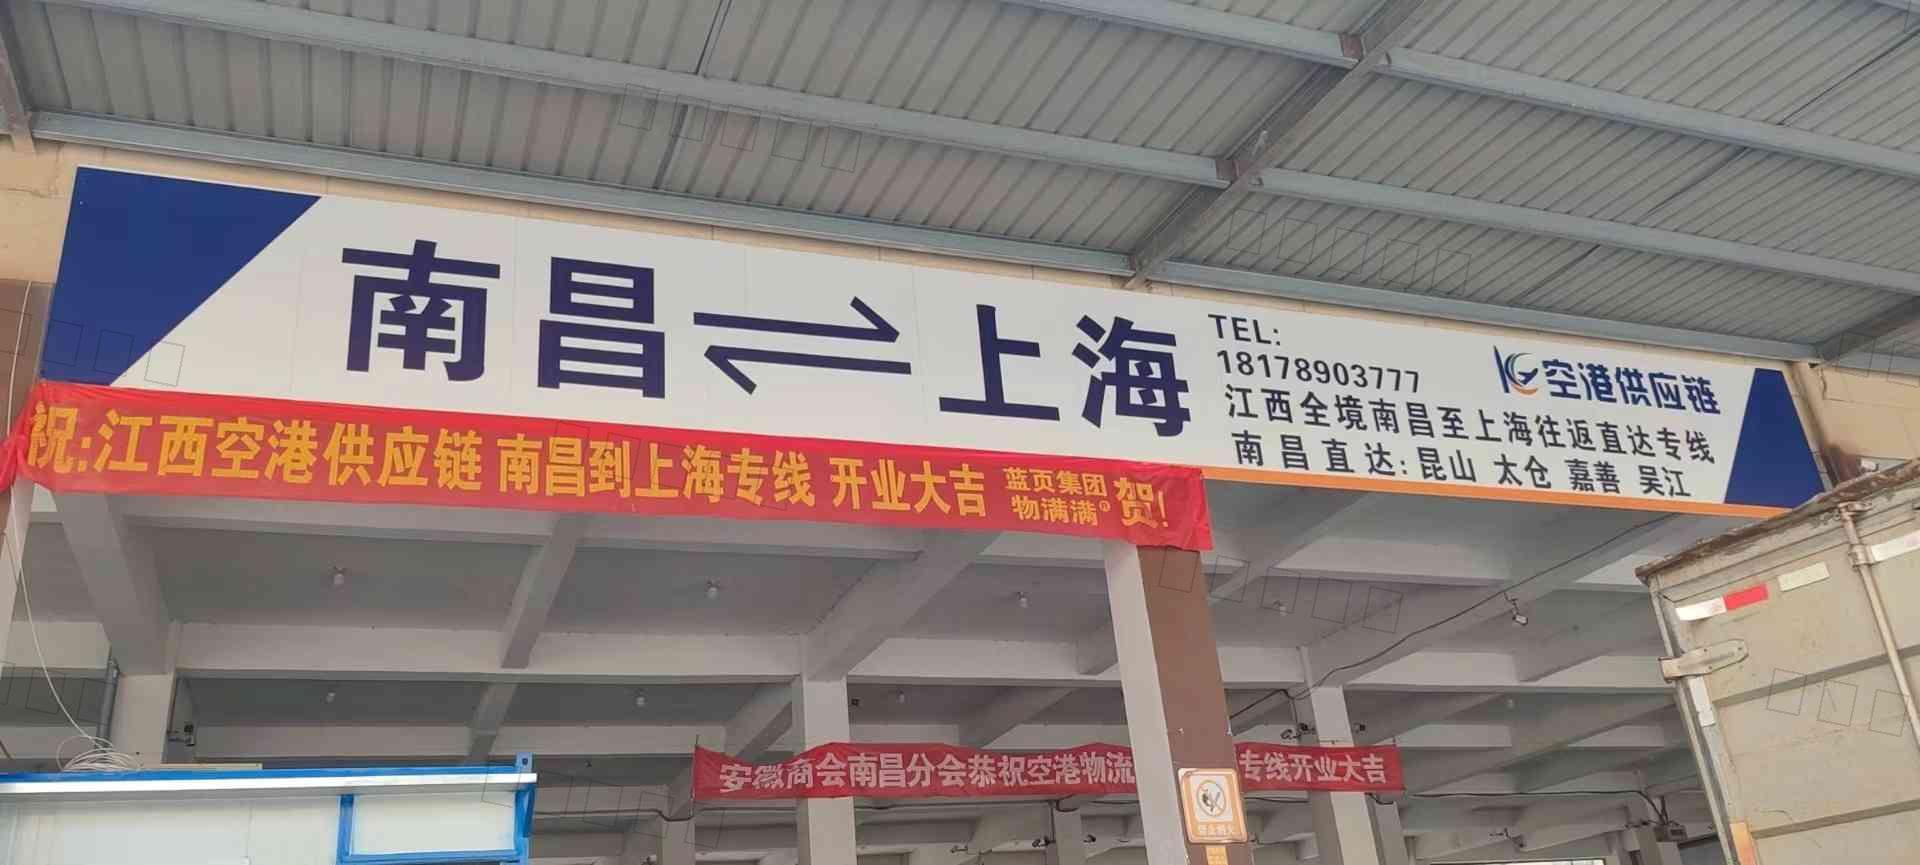 江西空港供应链有限公司